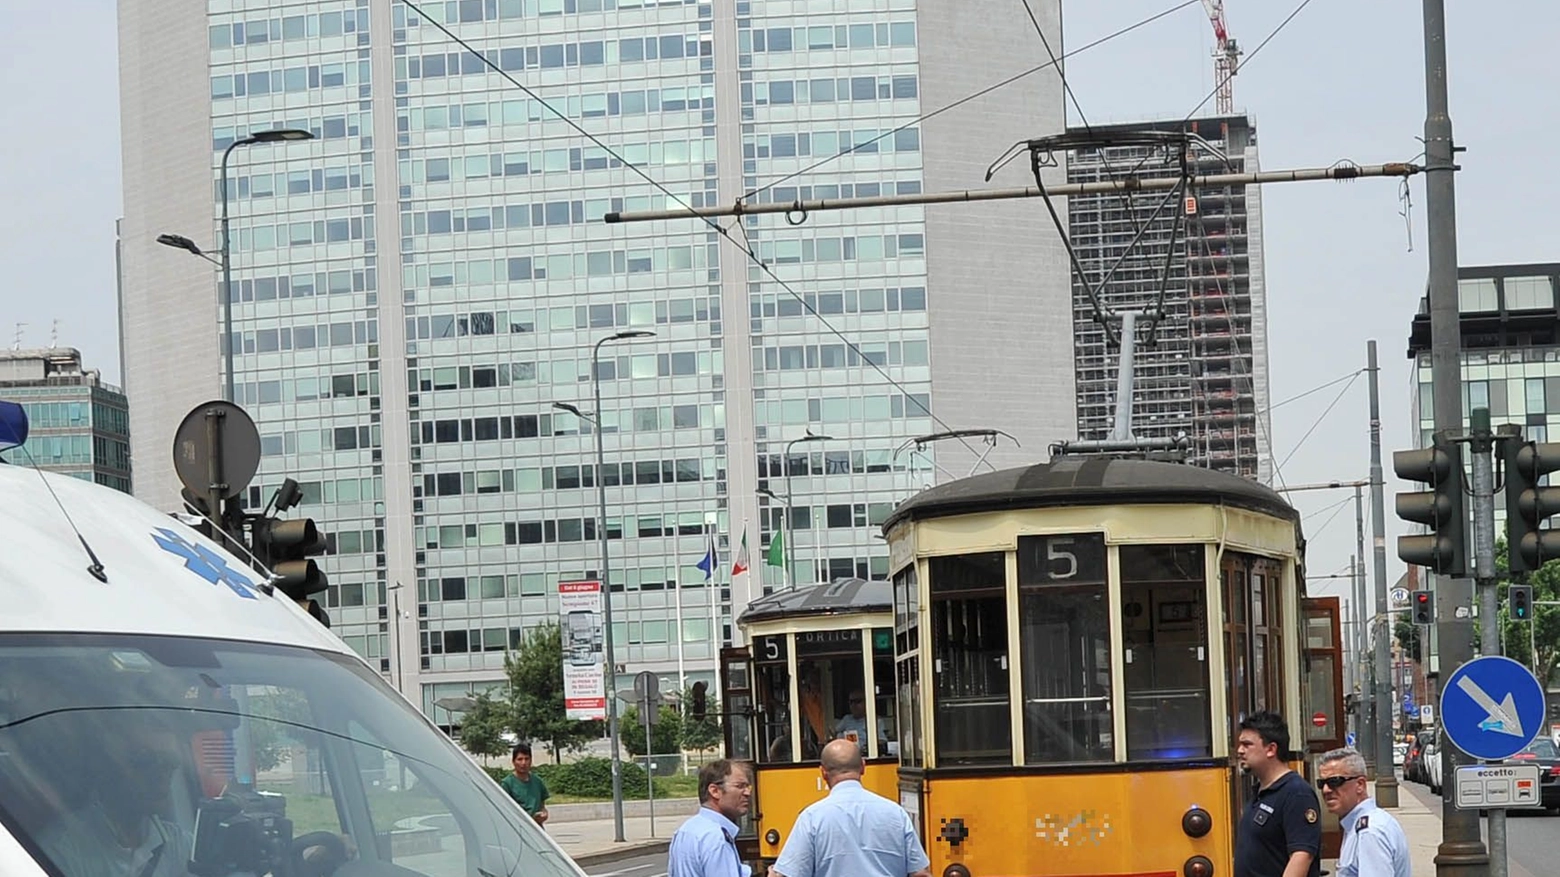 Ambulanza in azione in incidente con tram (foto d'archivio)